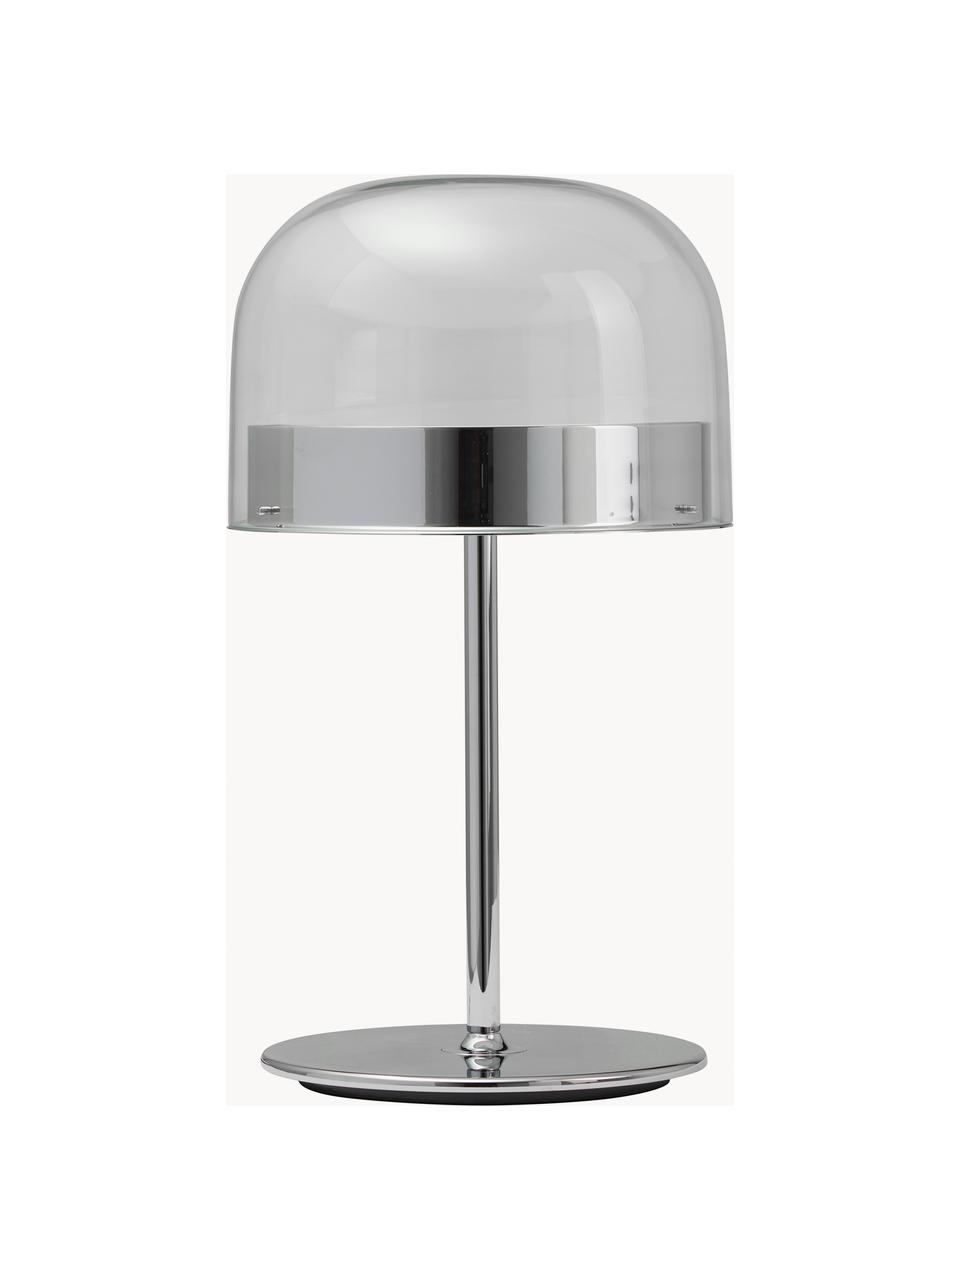 Handgefertigte LED-Tischlampe Equatore, Lampenschirm: Glas, Metall, galvanisier, Transparent, Silberfarben, Ø 24 x H 43 cm